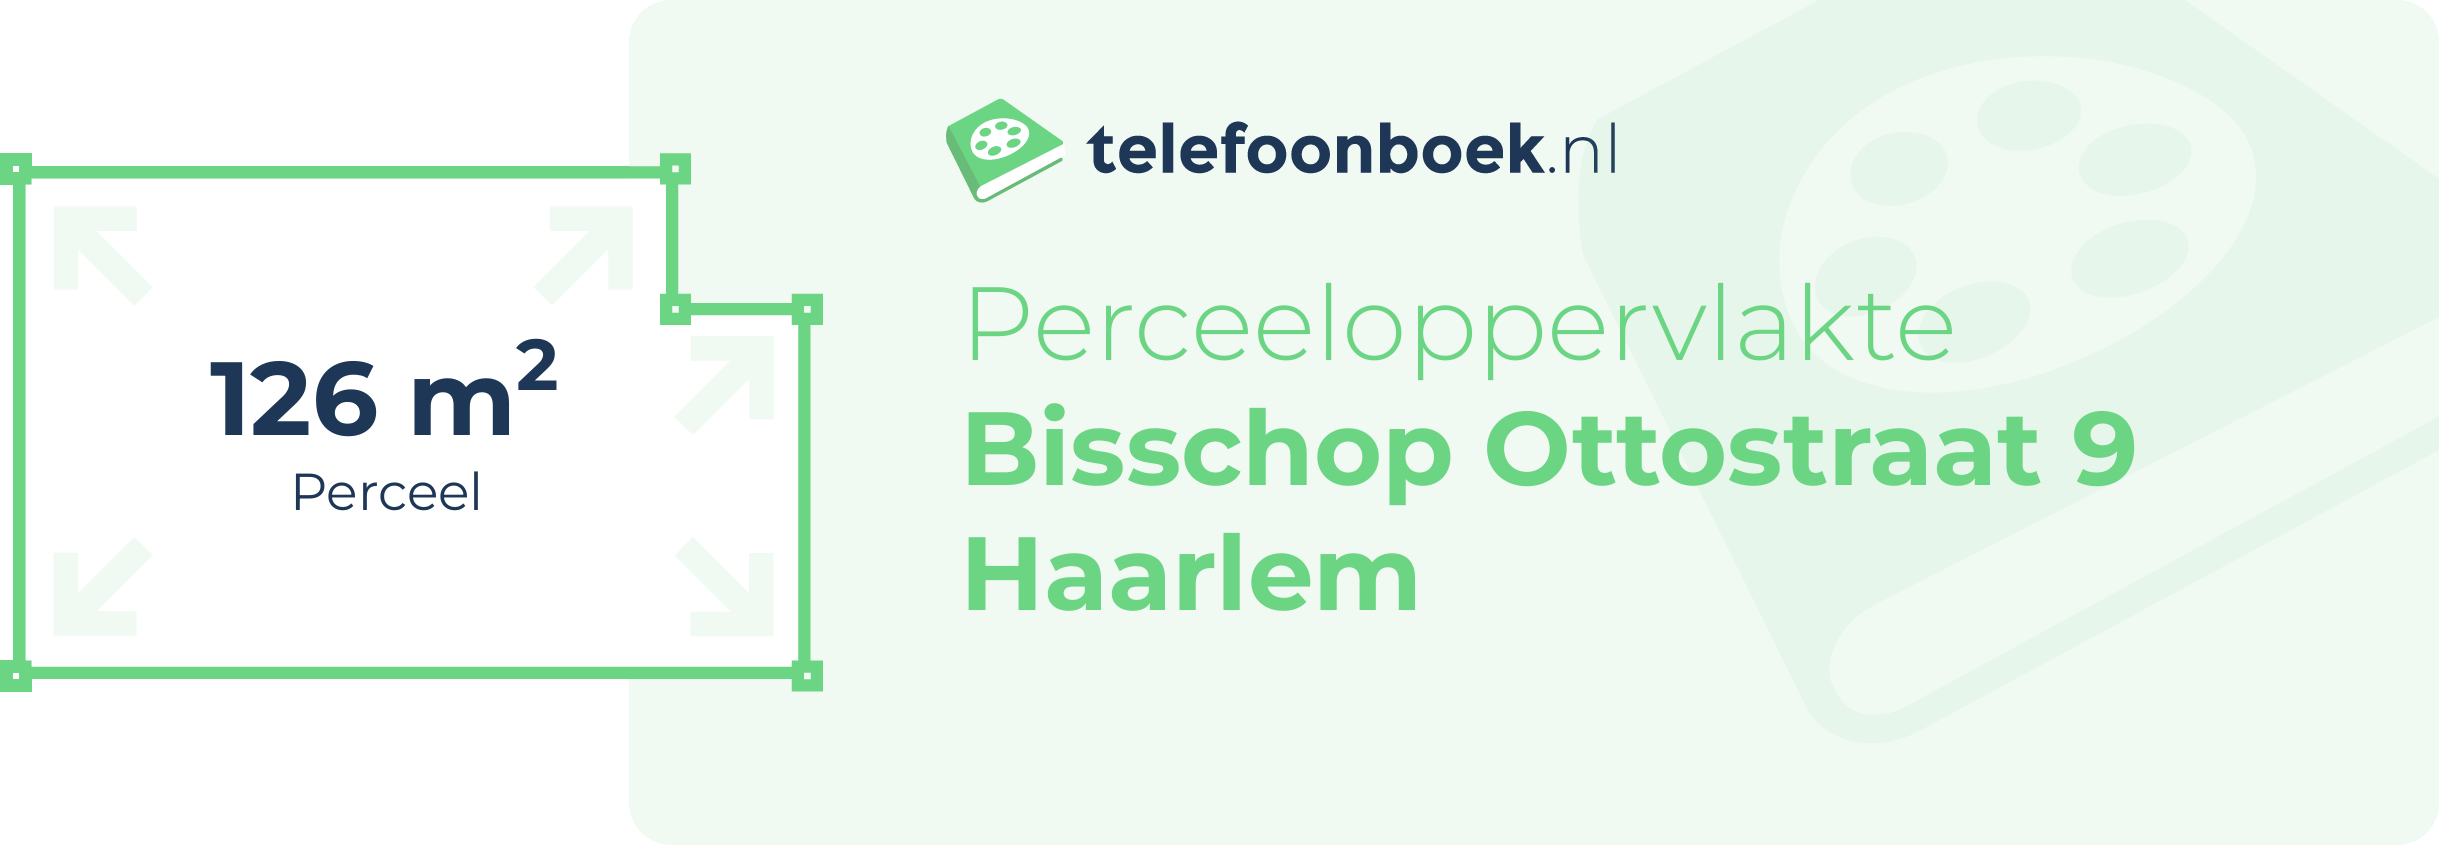 Perceeloppervlakte Bisschop Ottostraat 9 Haarlem